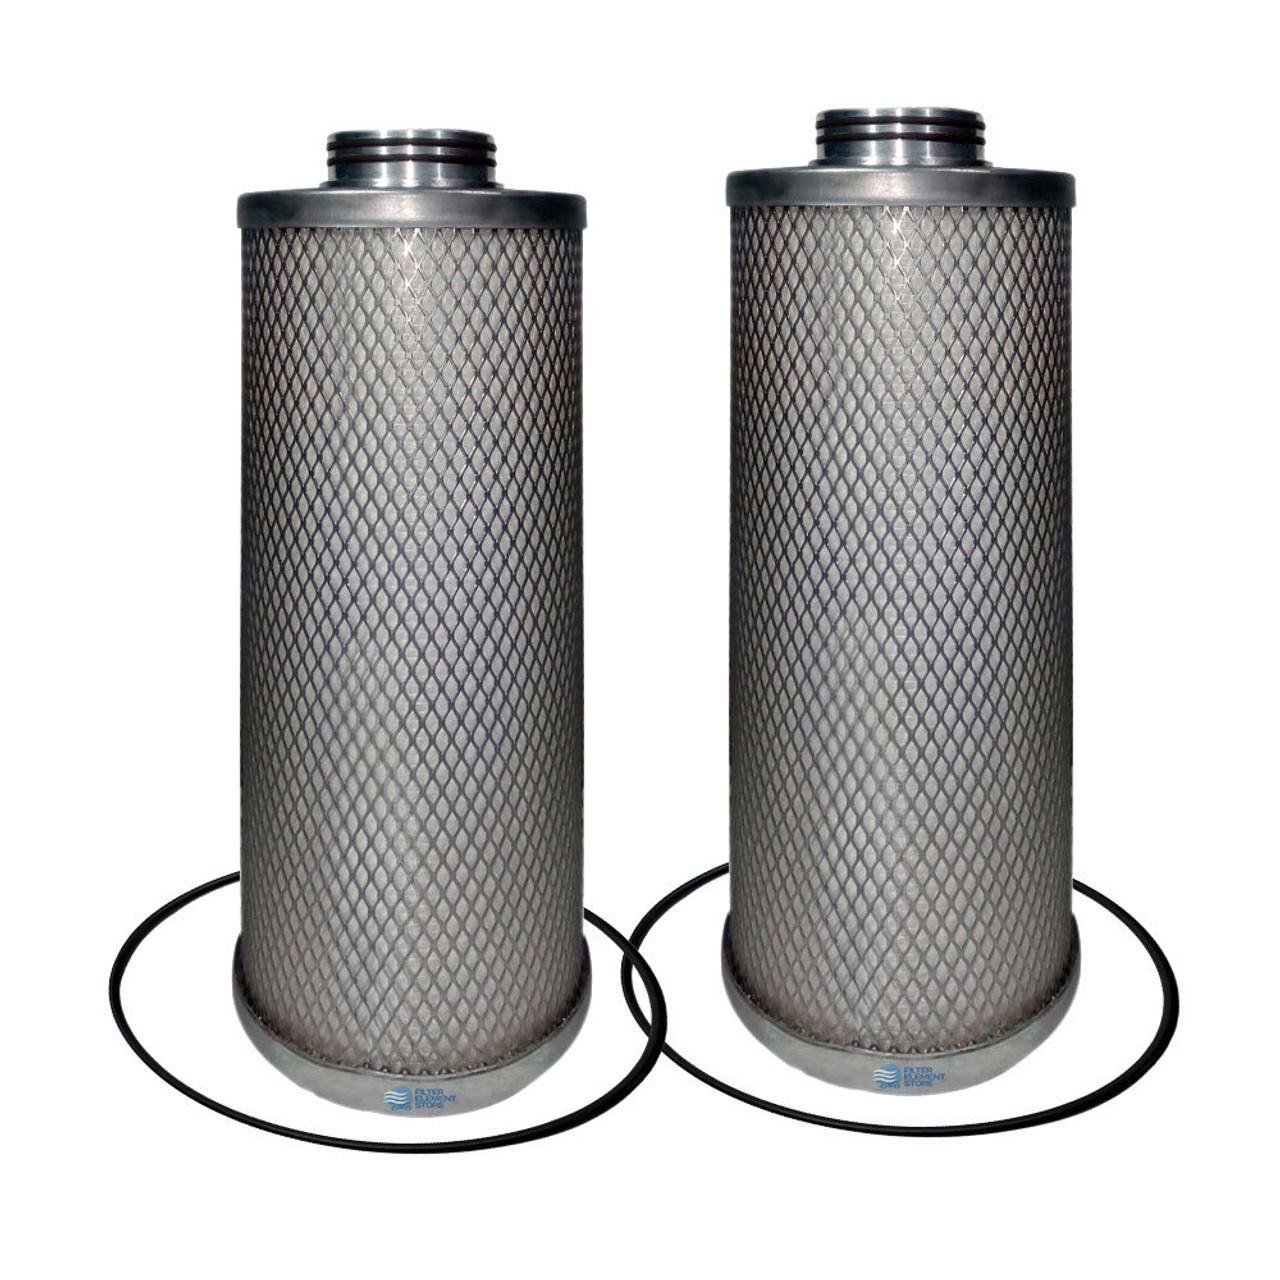 SULLAIR 02250218-885 Separator Filter Kit- Set of Two